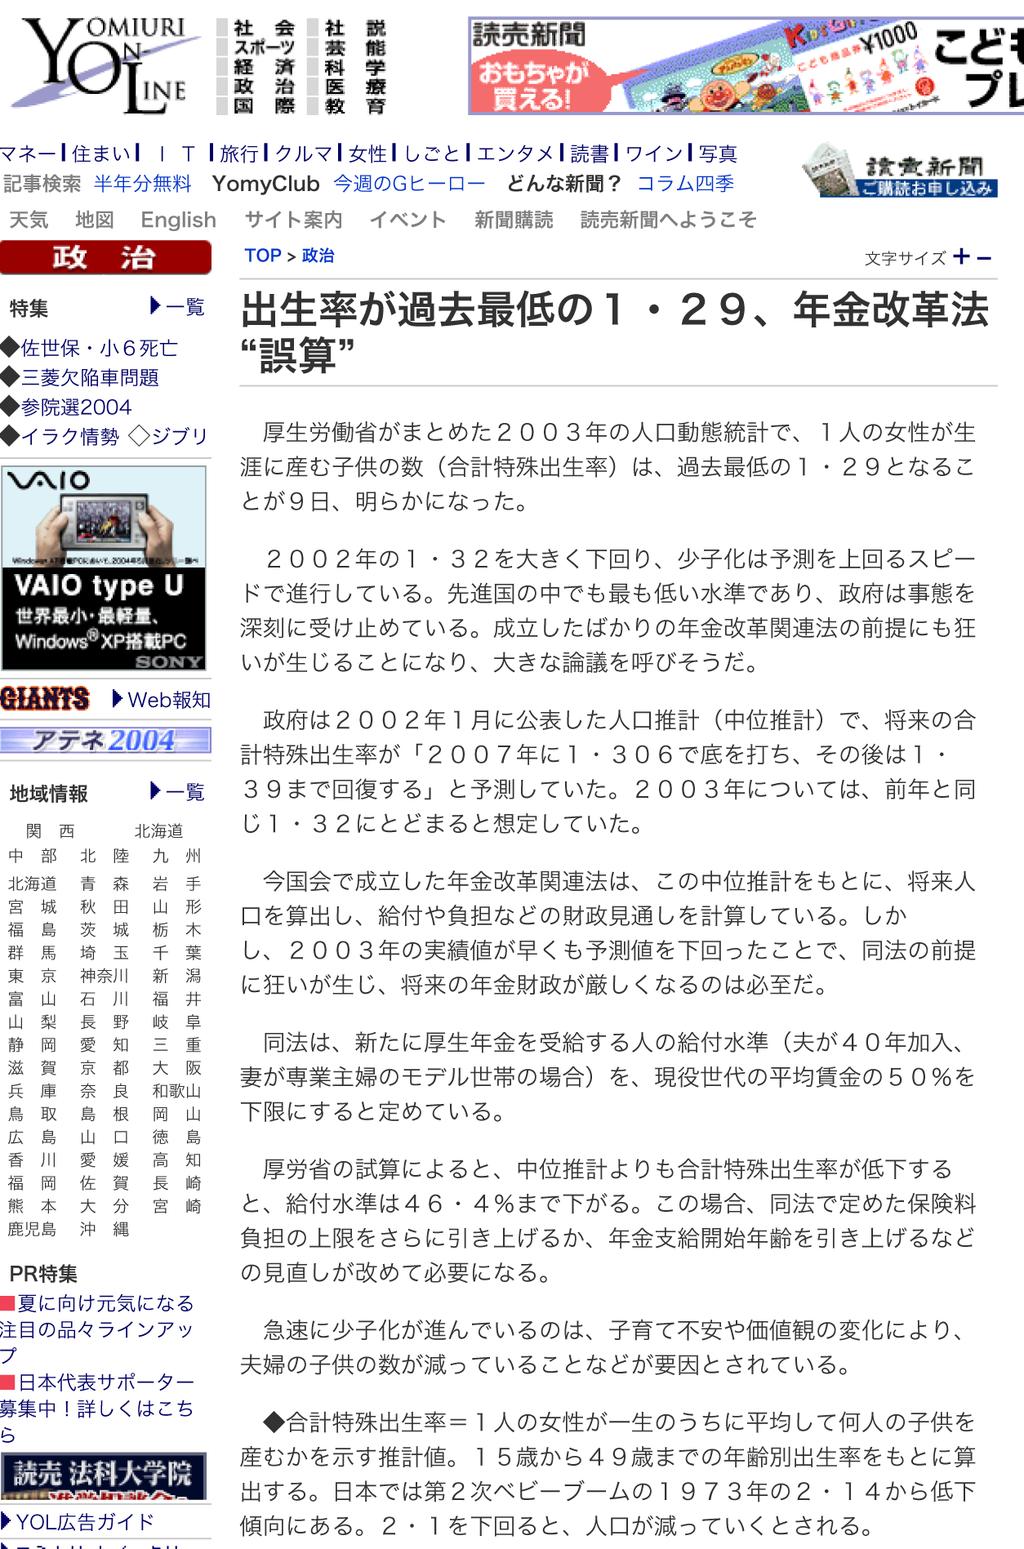 H7 2004//28 2004 6 0 http://www.yomiuri.co.